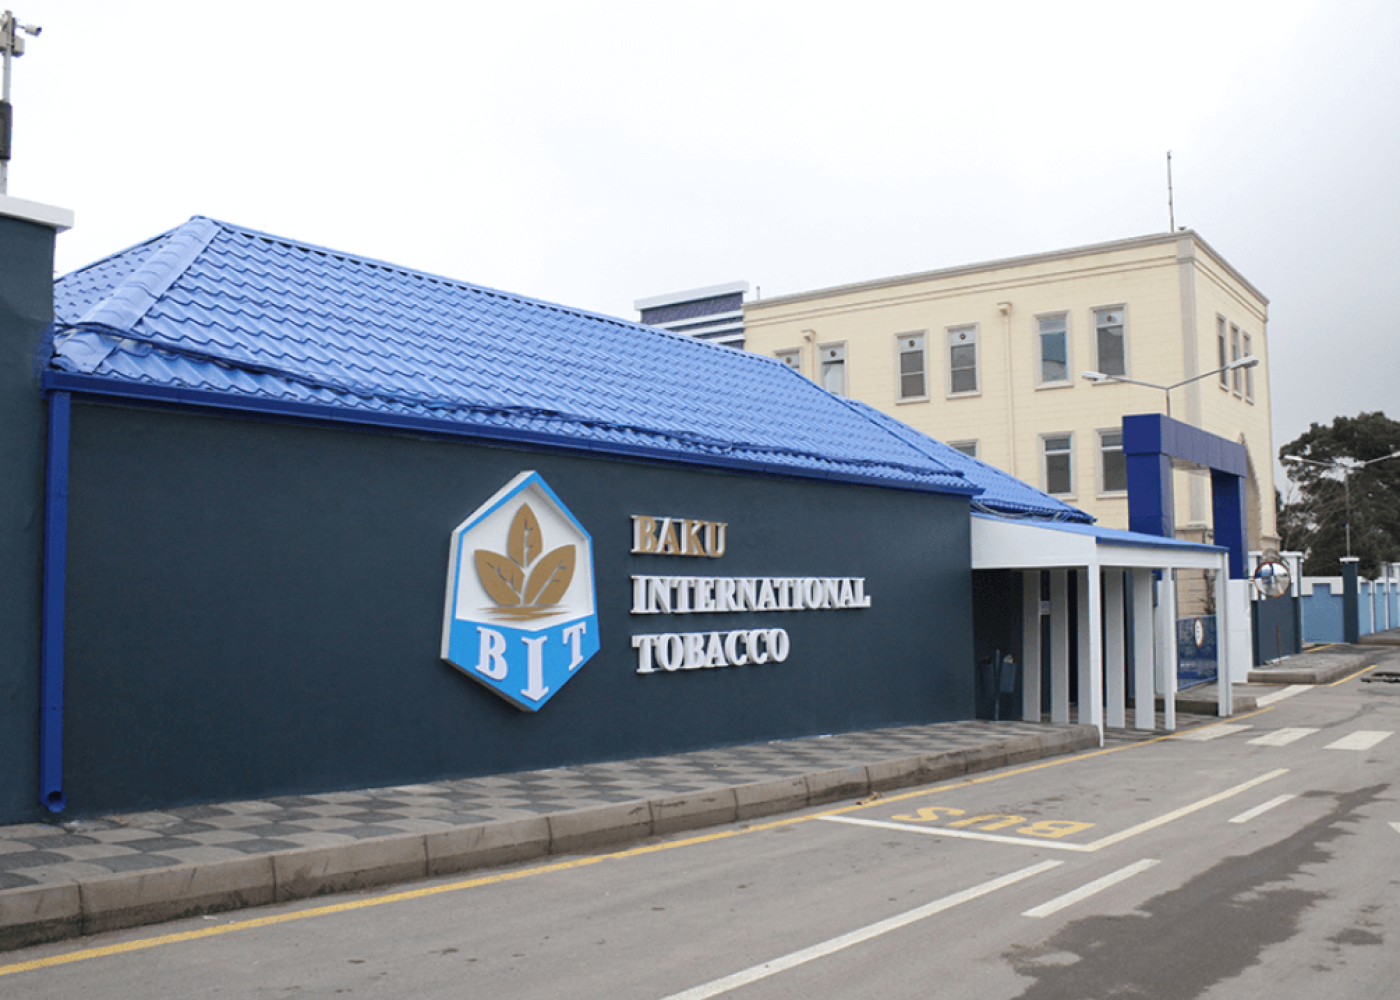 “Baku İnternational Tobacco”qaydaları pozdu